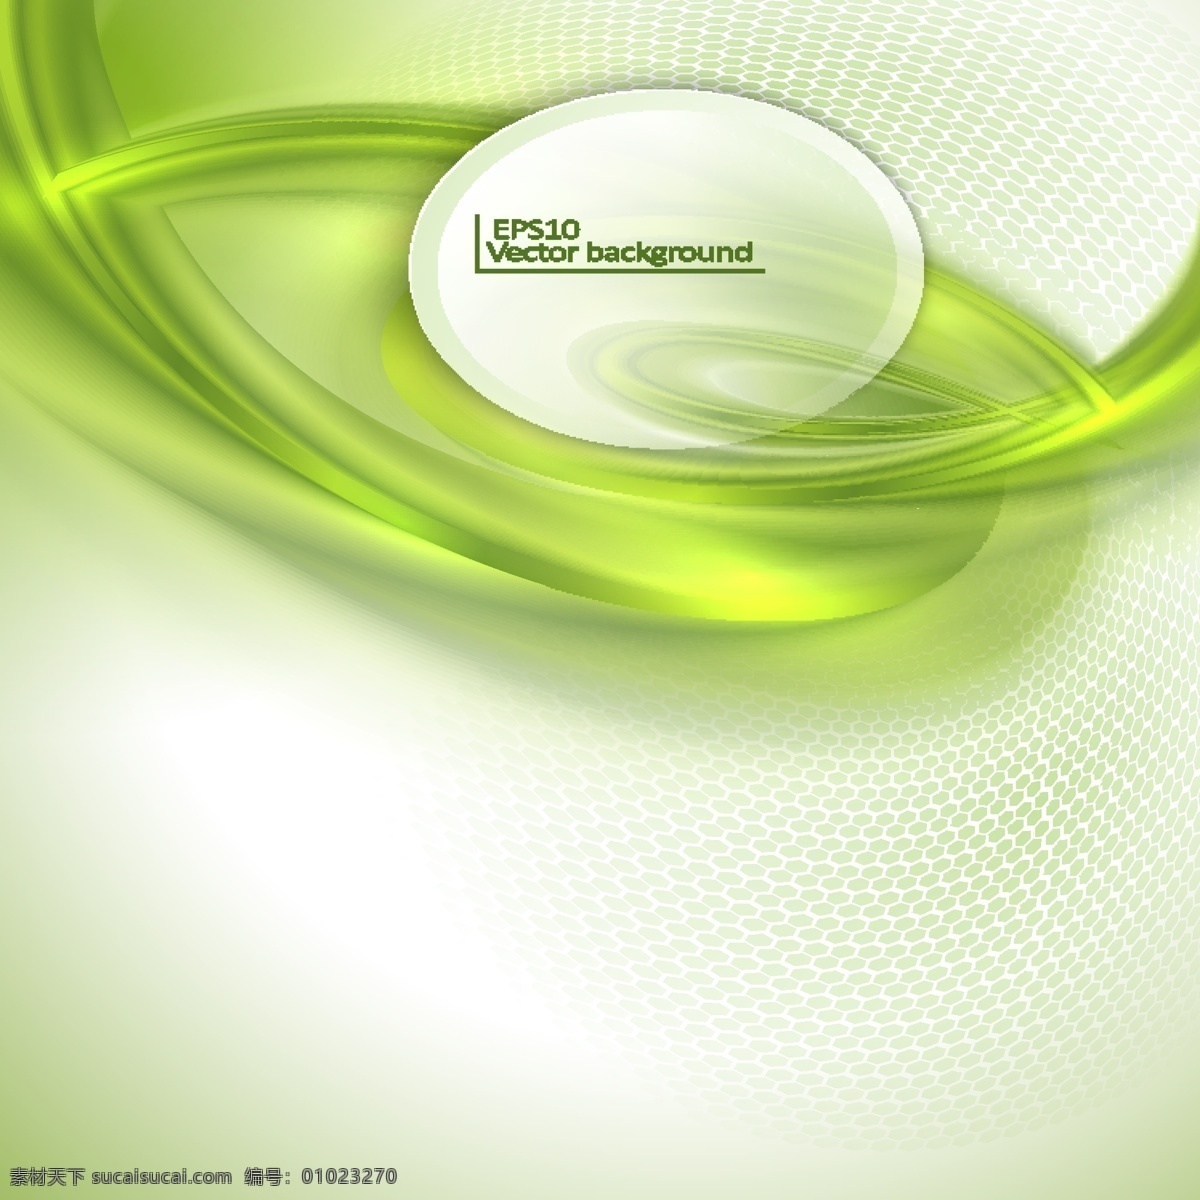 绿色 动感 曲线 背景 动感曲线 绿色背景 背景图案 背景模板 底纹边框 矢量素材 白色